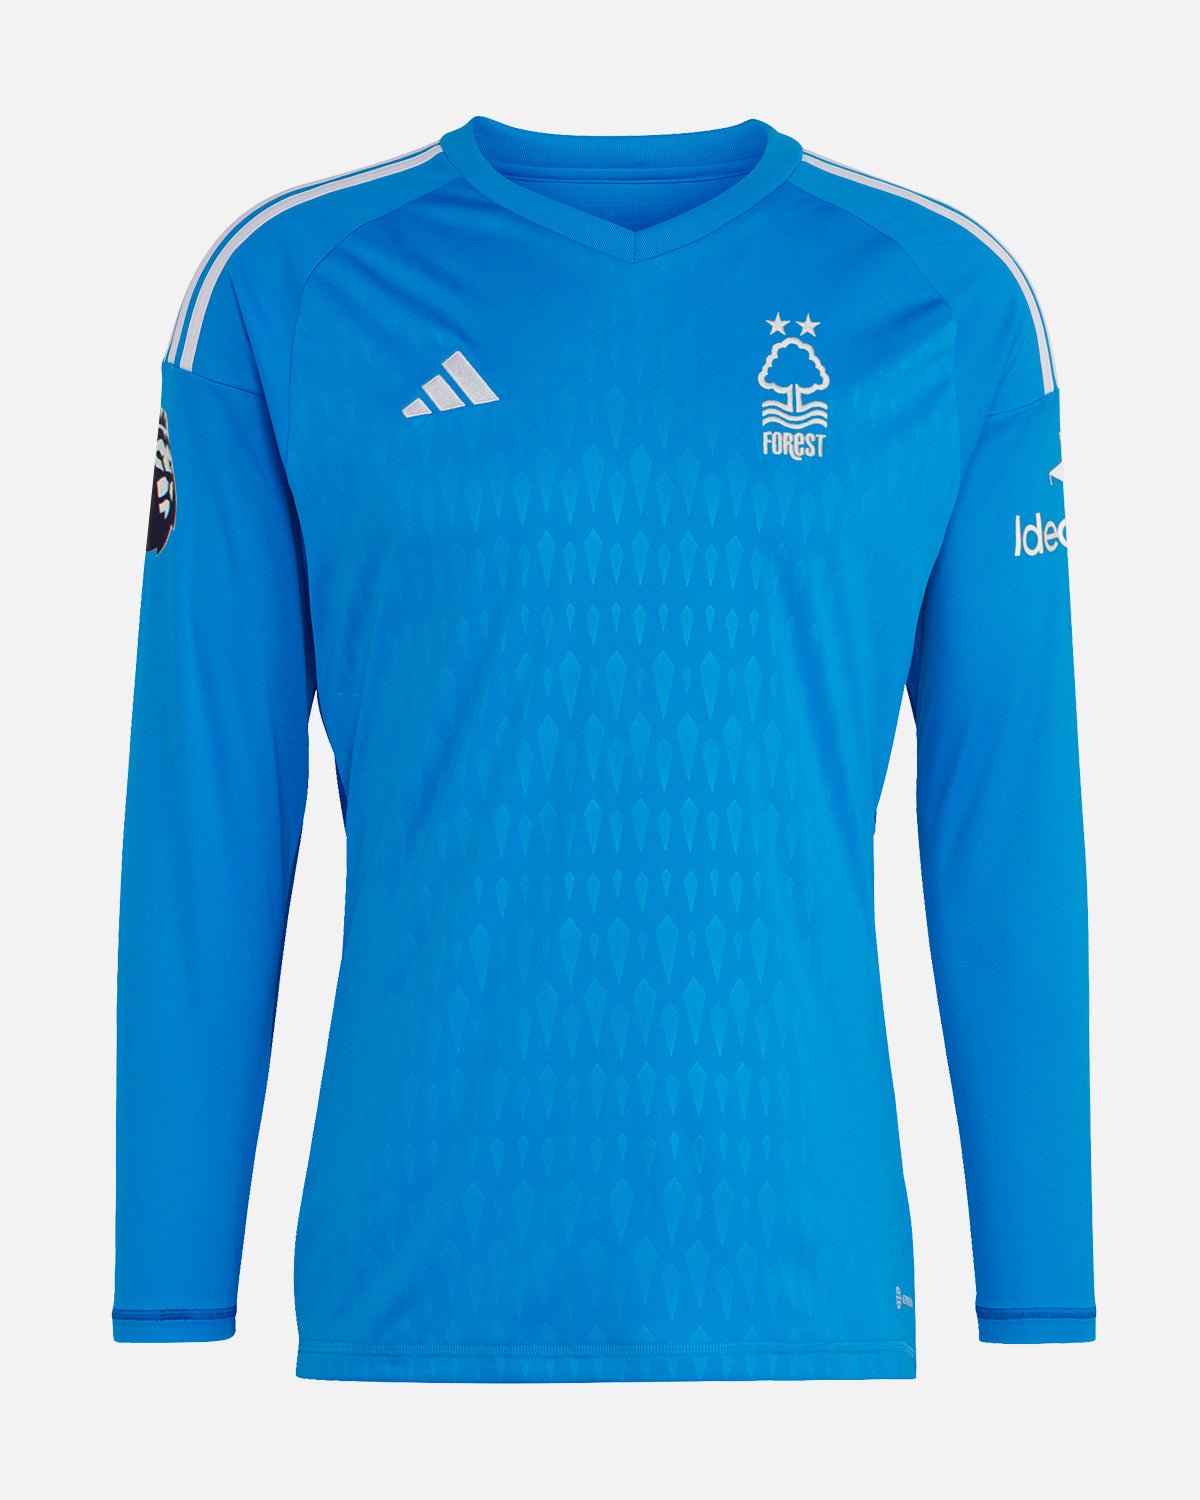 NFFC Junior Blue Goalkeeper Shirt 23-24 - Turner 1 - Nottingham Forest FC